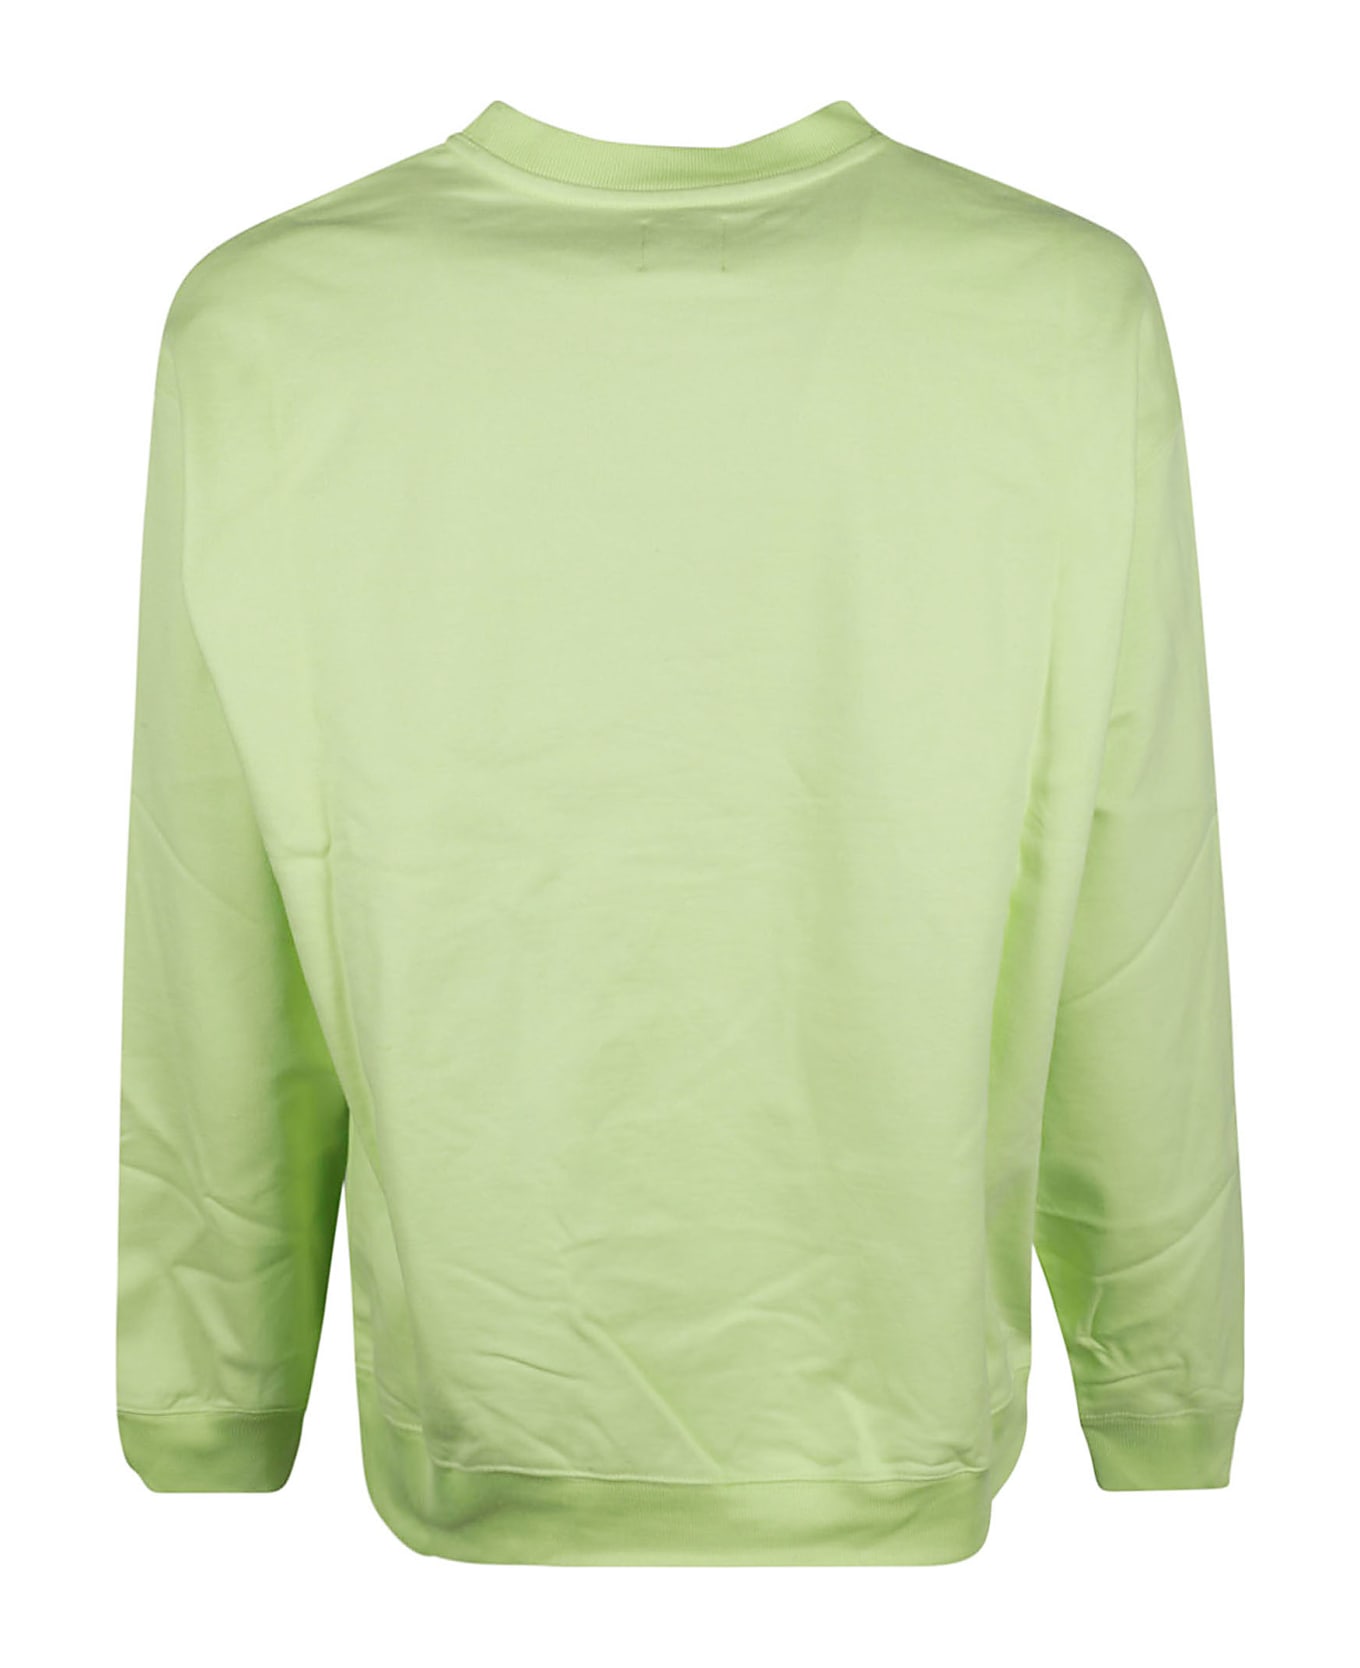 PACCBET Printed Sweatshirt - Green フリース